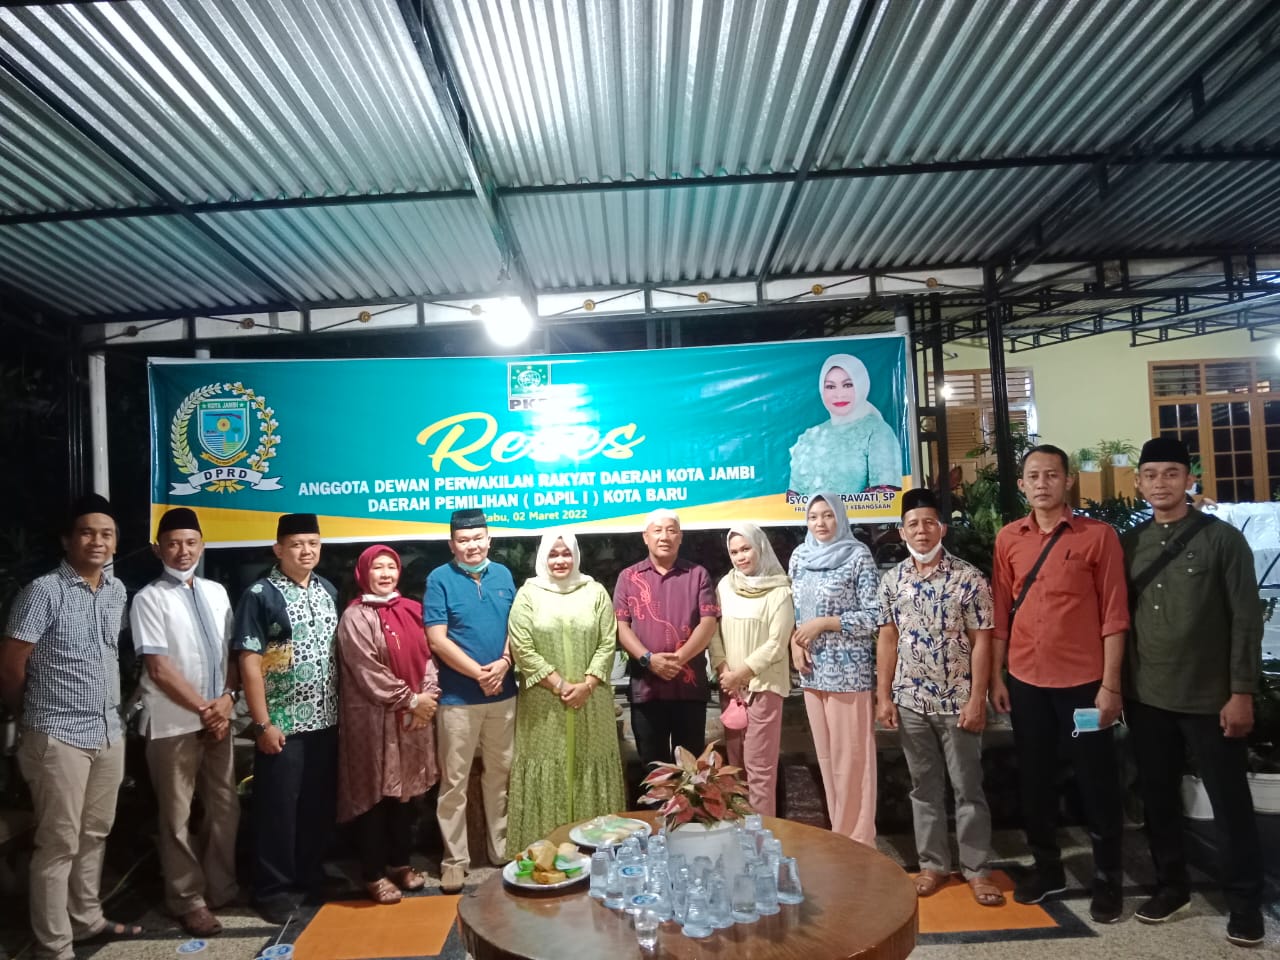 Reses DPRD Kota Jambi, Syofni Herawati Terus Perjuangkan Aspirasi Warga